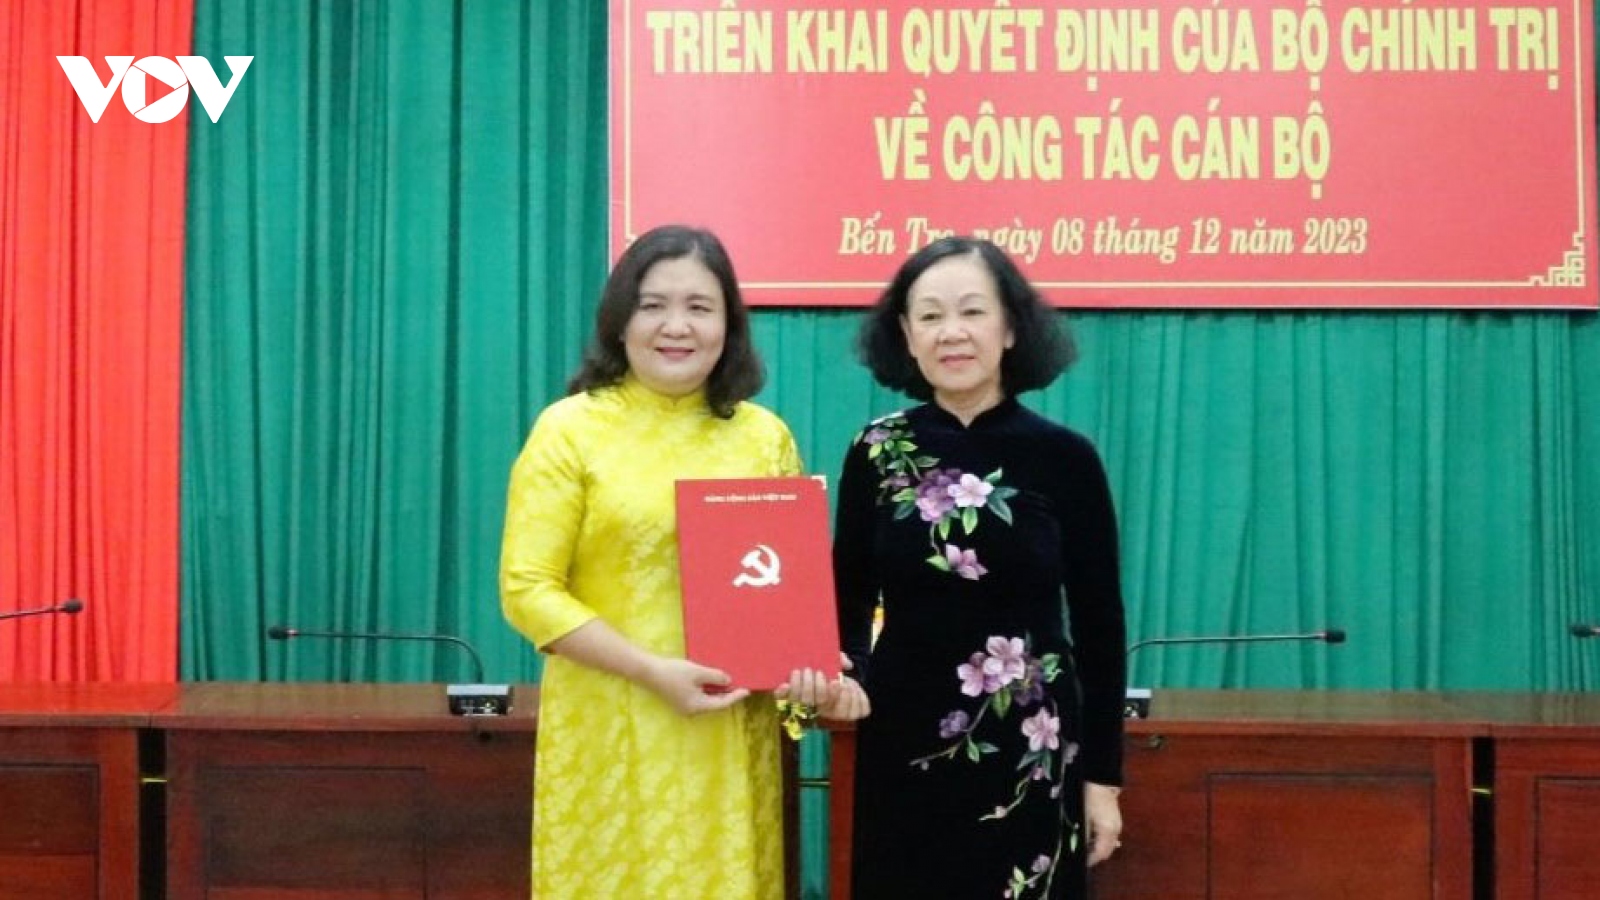 Bộ Chính trị phân công bà Hồ Thị Hoàng Yến làm Quyền Bí thư Tỉnh ủy Bến Tre